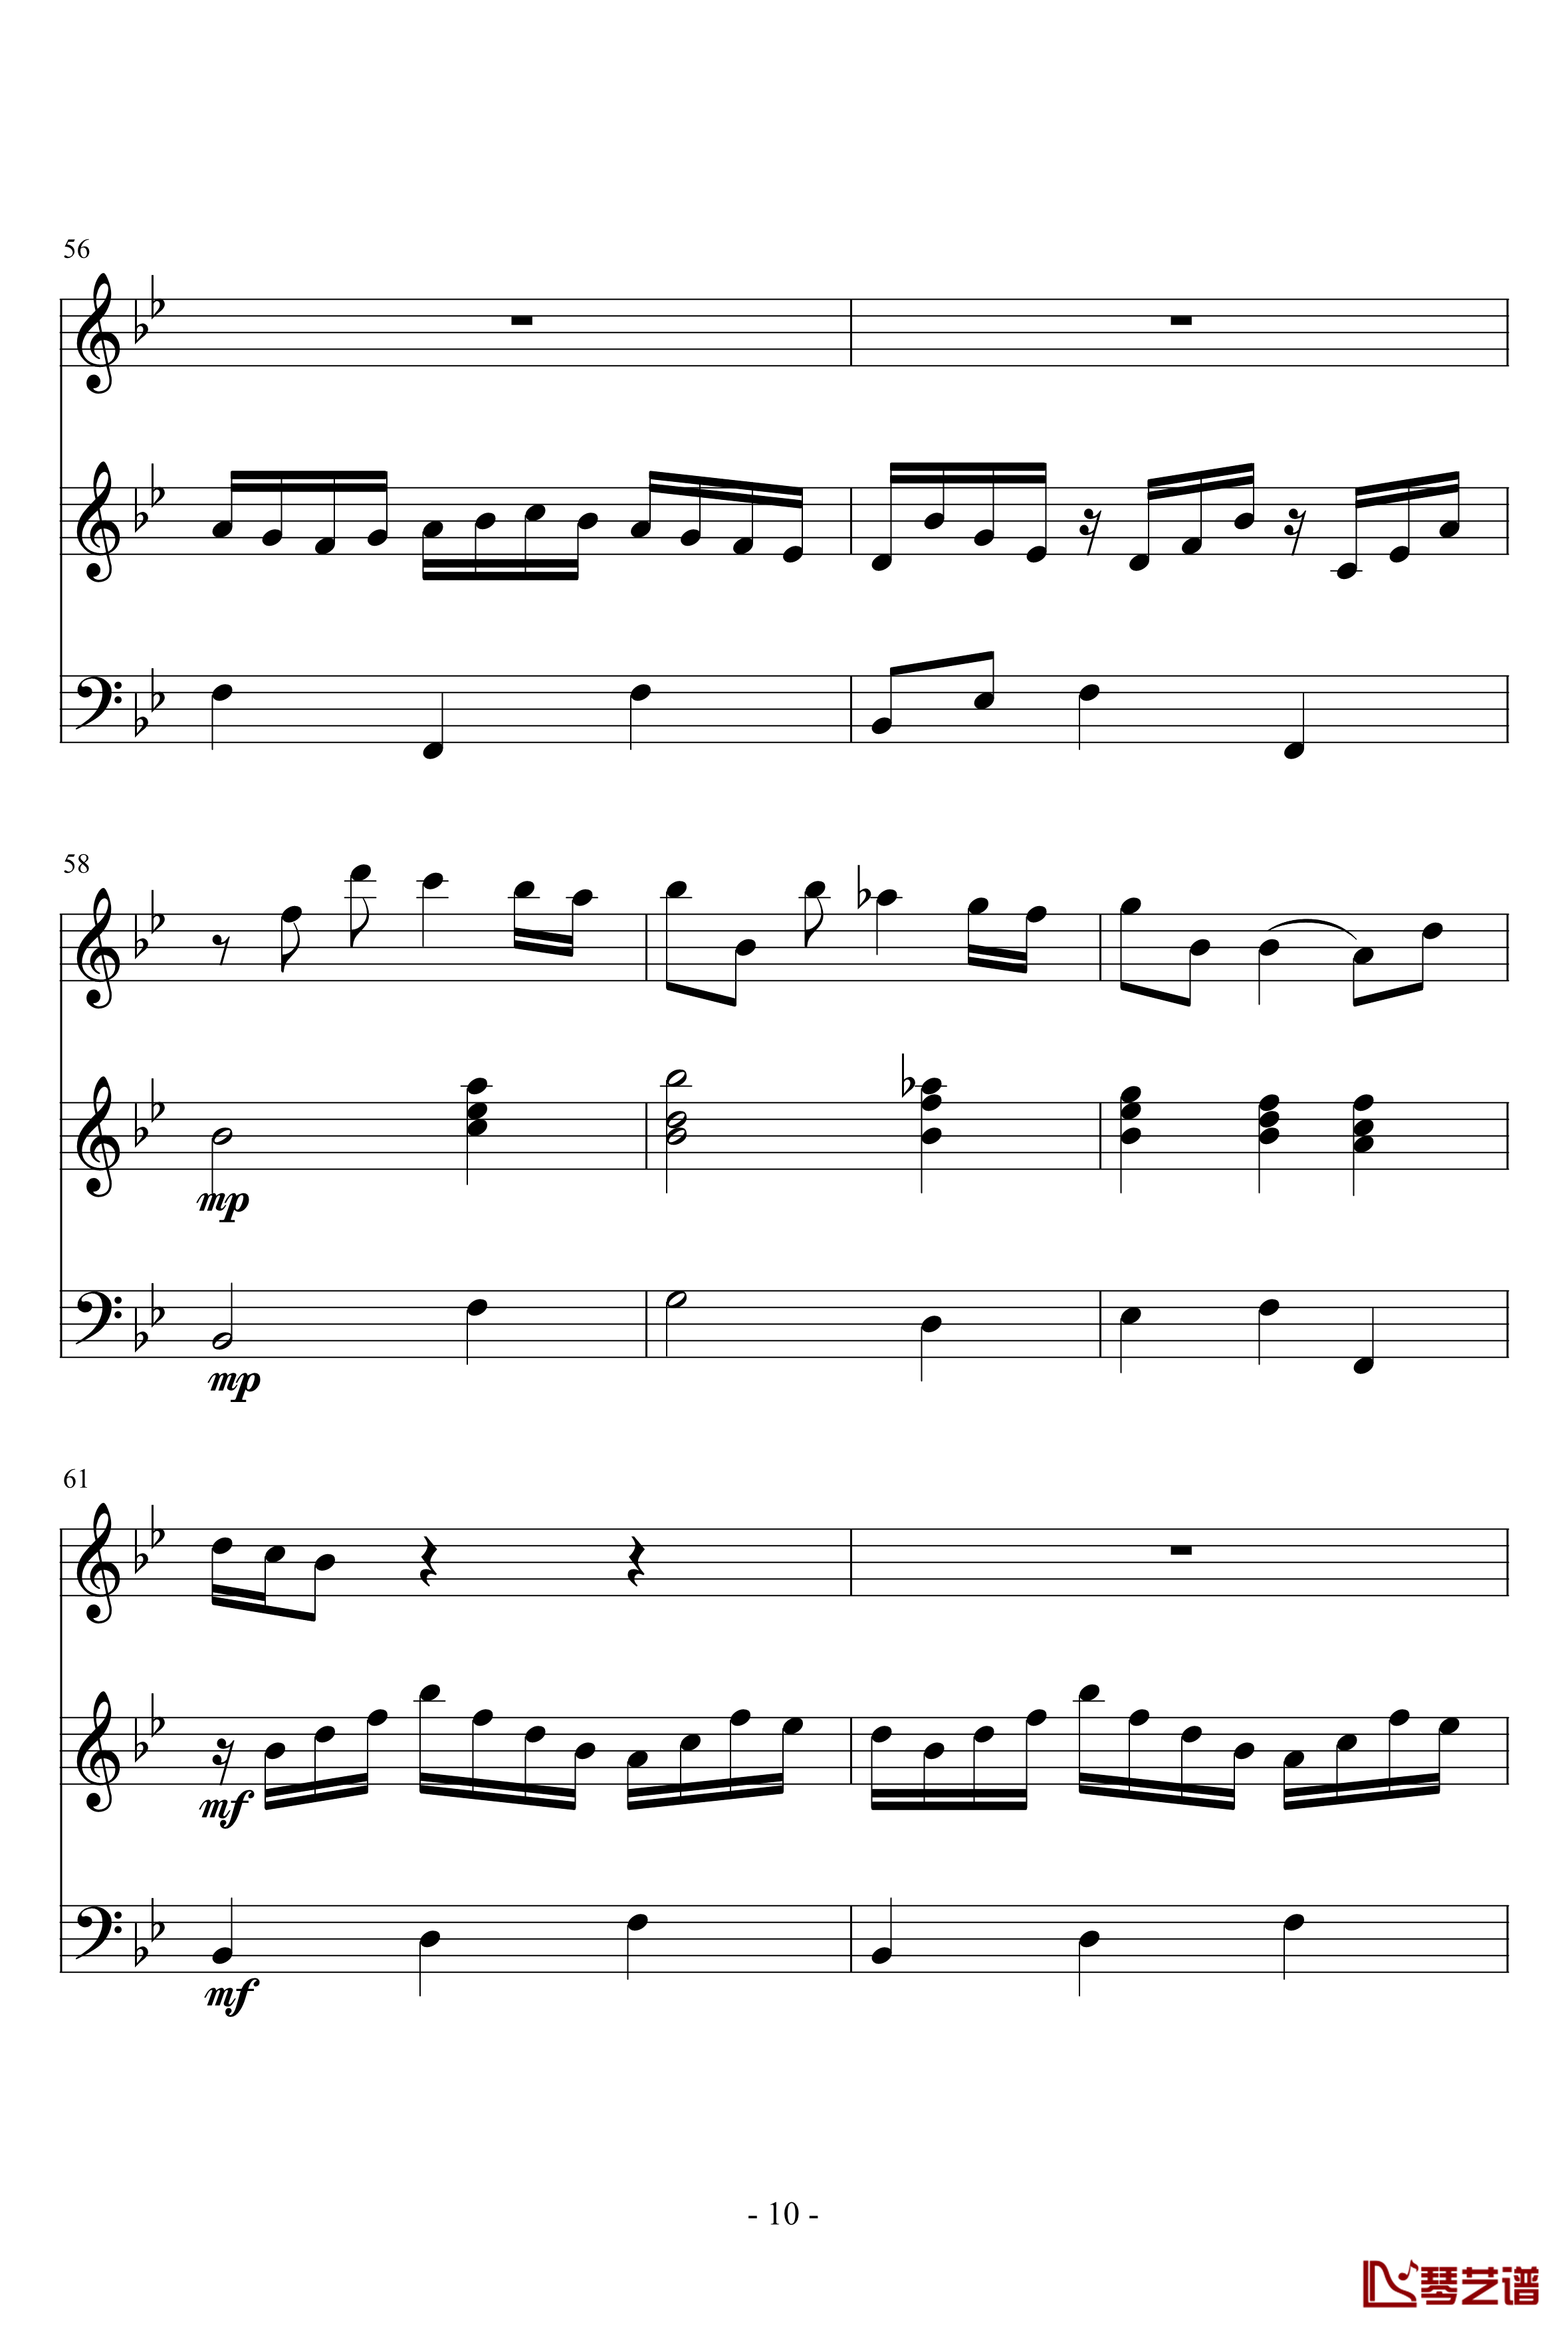 长笛与羽管键琴奏鸣曲第一乐章钢琴谱-巴赫-P.E.Bach10